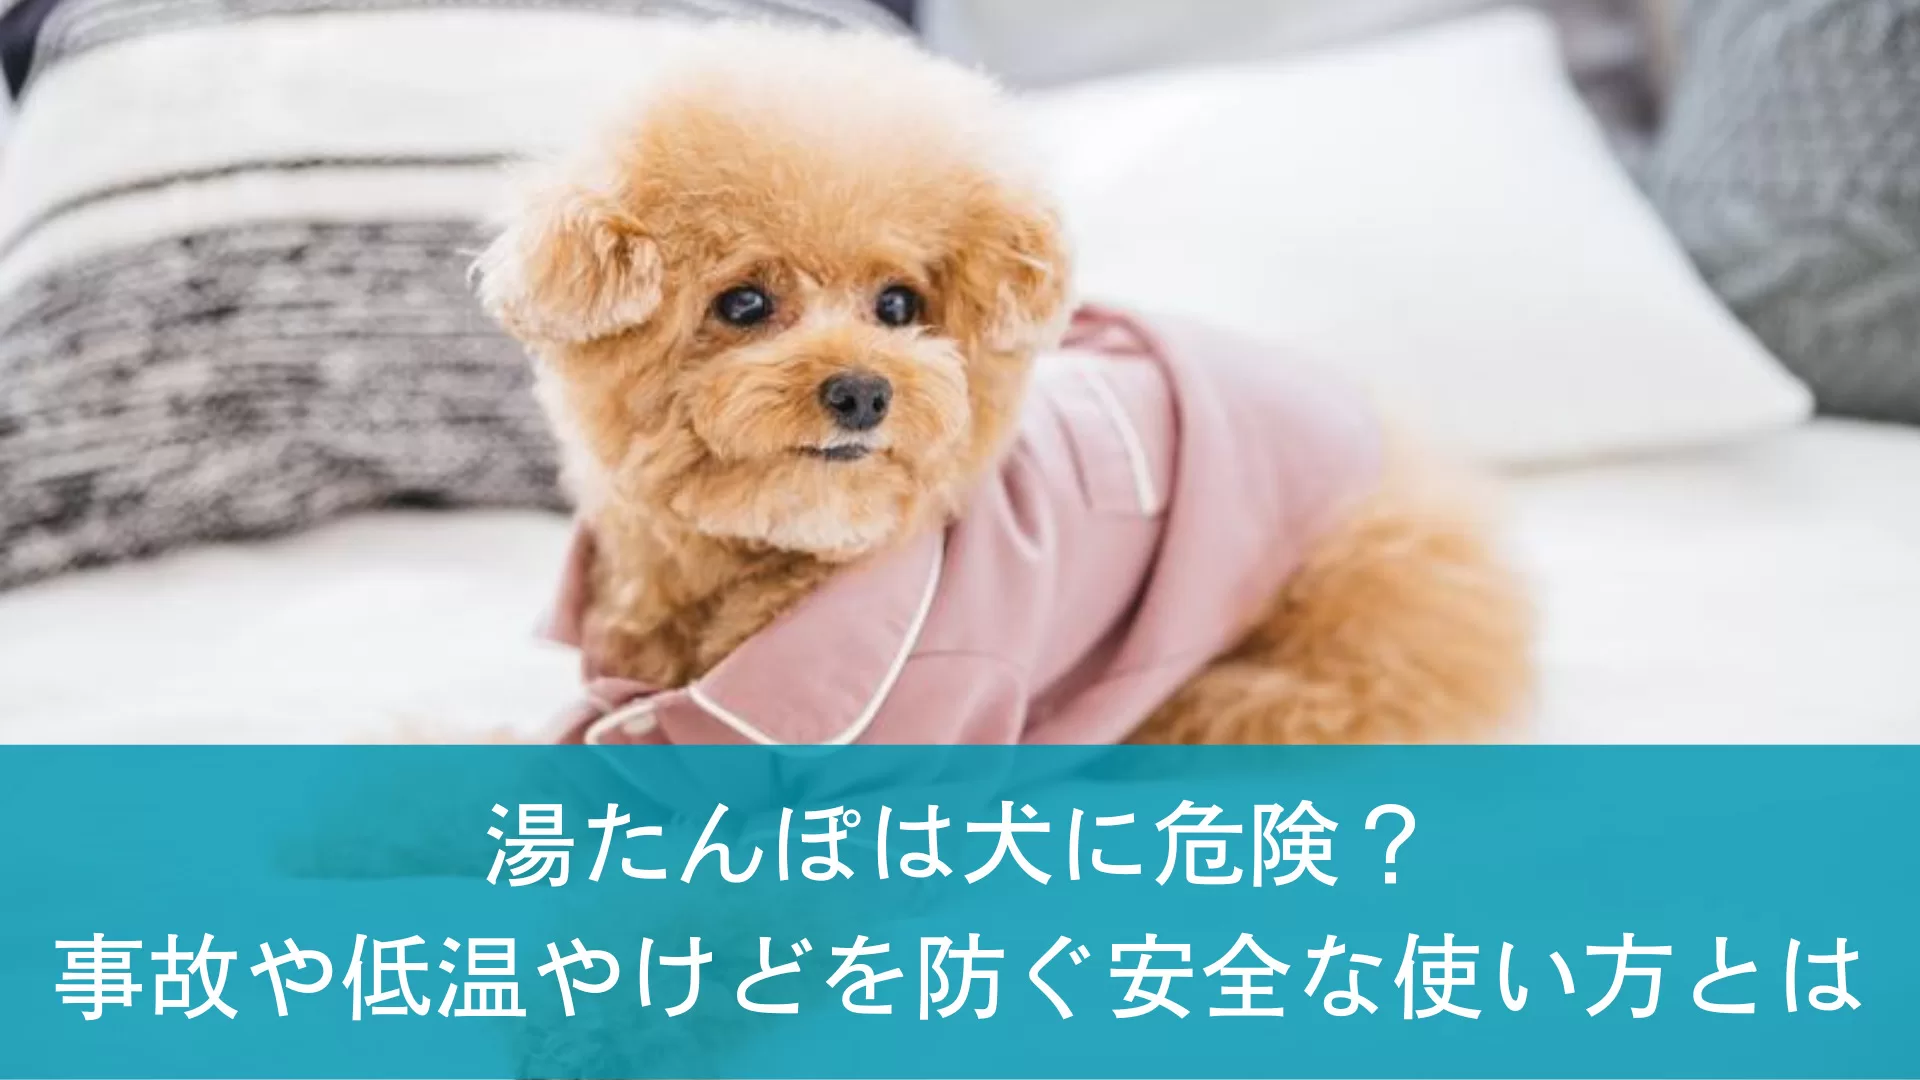 湯たんぽは犬に危険？事故や低温やけどを防ぐ安全な使い方とは